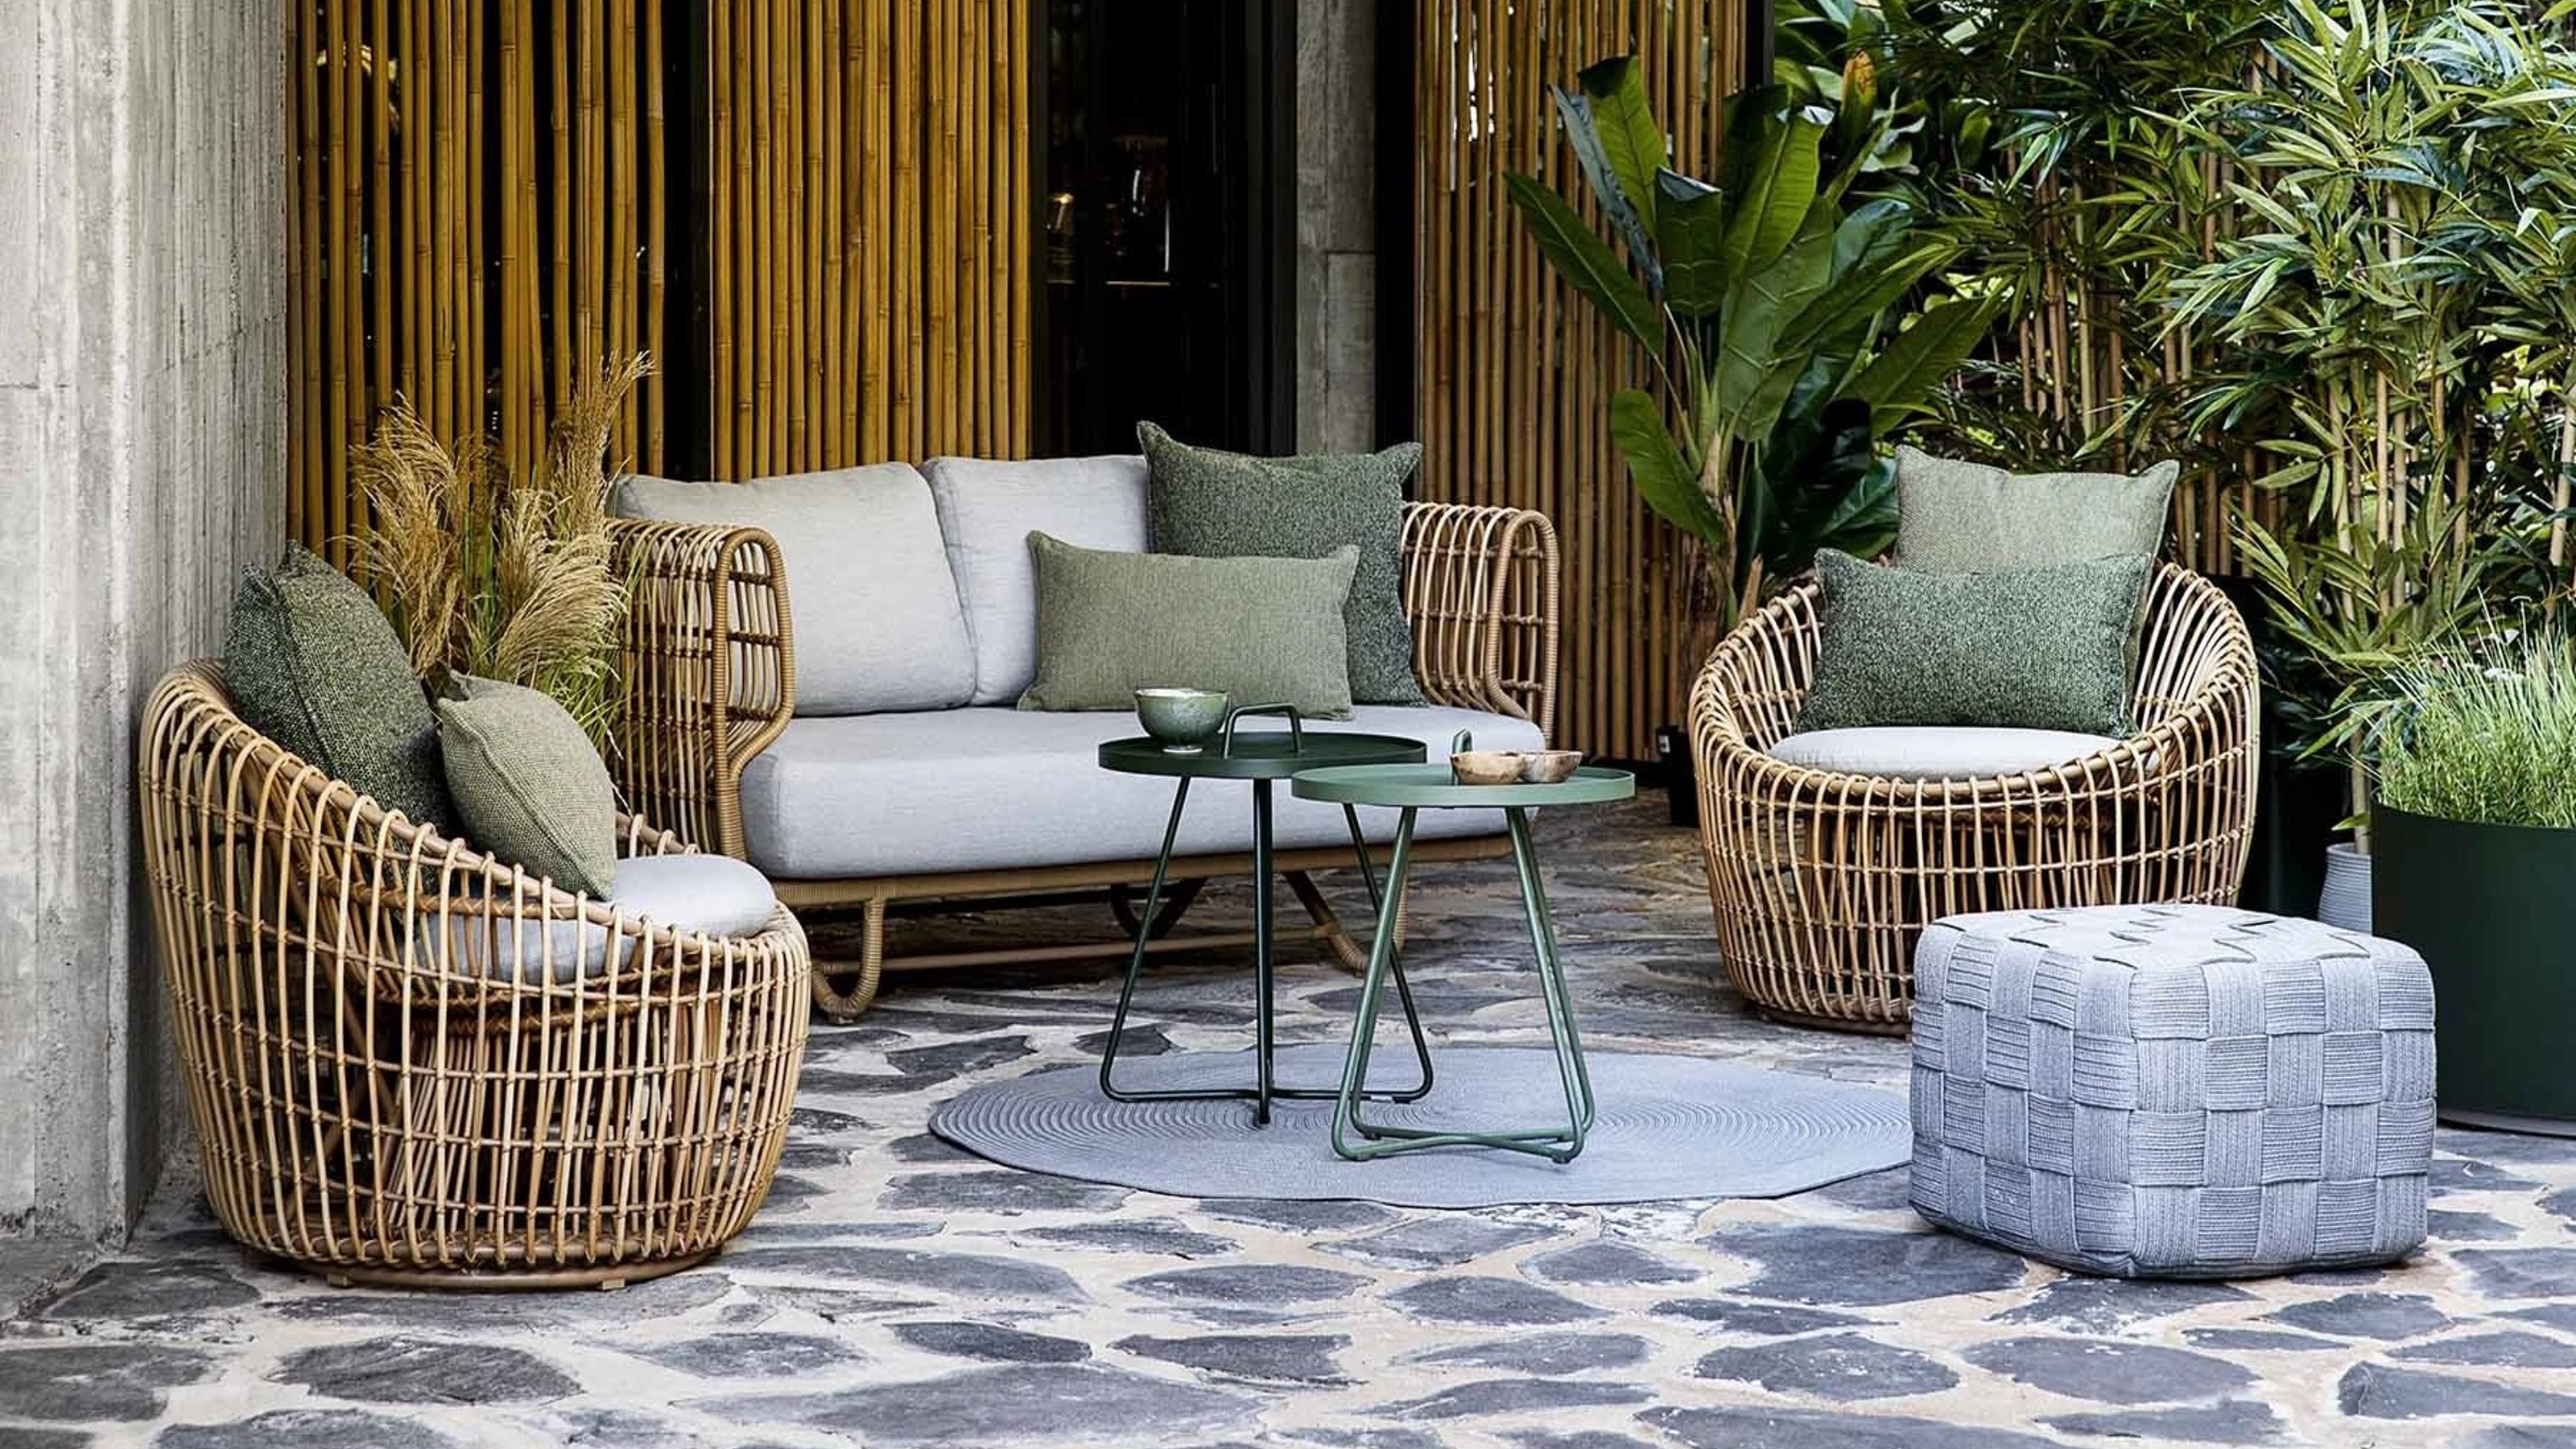 Best outdoor furniture brands for a design-led backyard | Livingetc